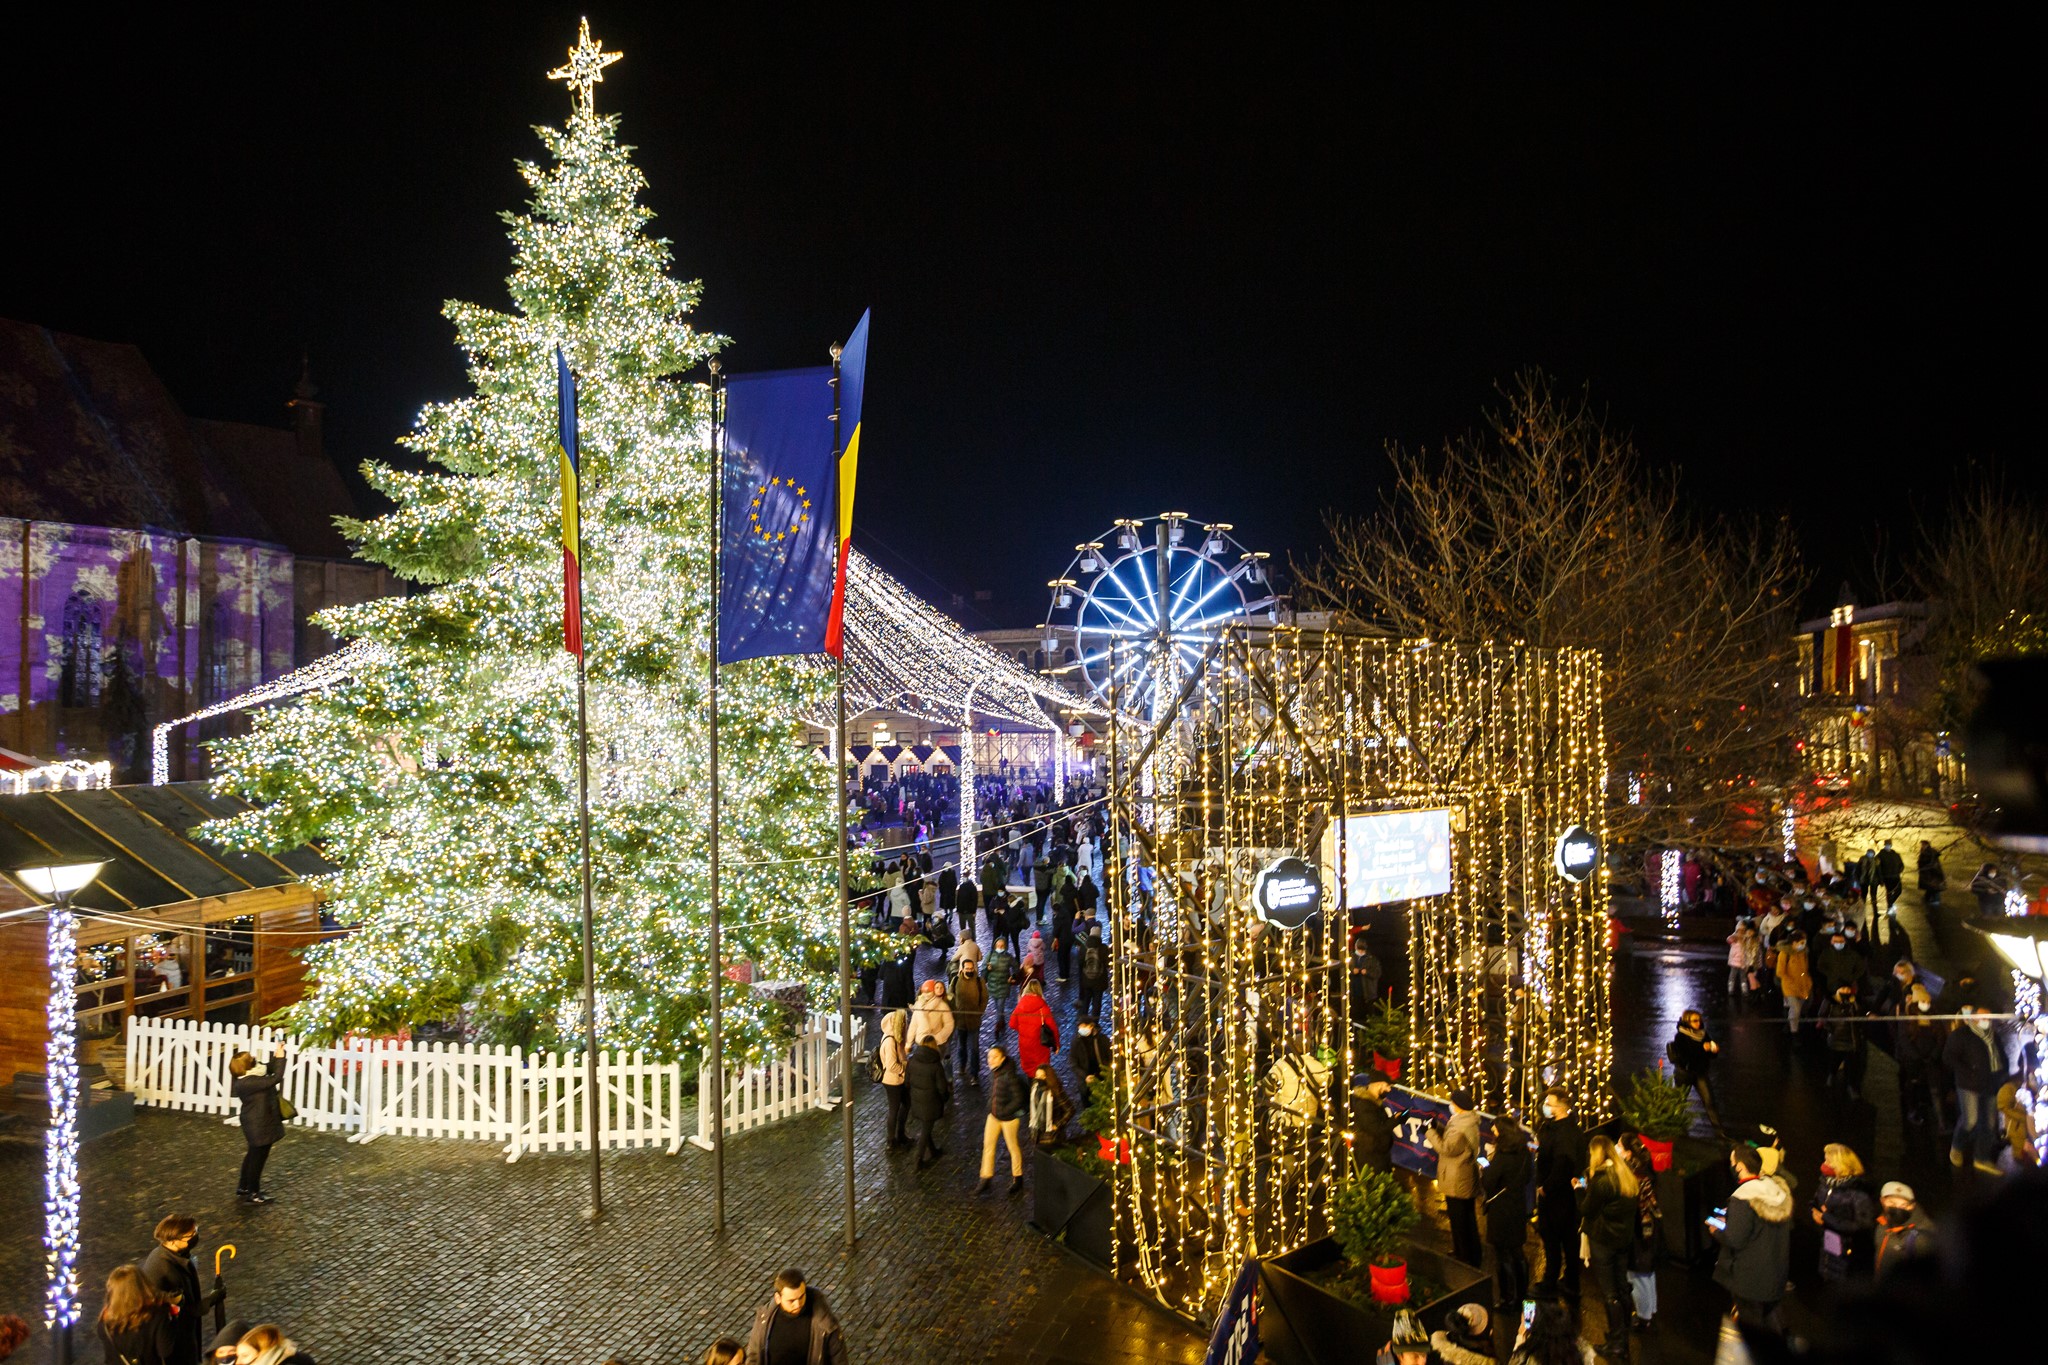 Târgul de Crăciun începe vineri, 18 noiembrie, în Piața Unirii din Cluj. FOTO: Târgul de Crăciun